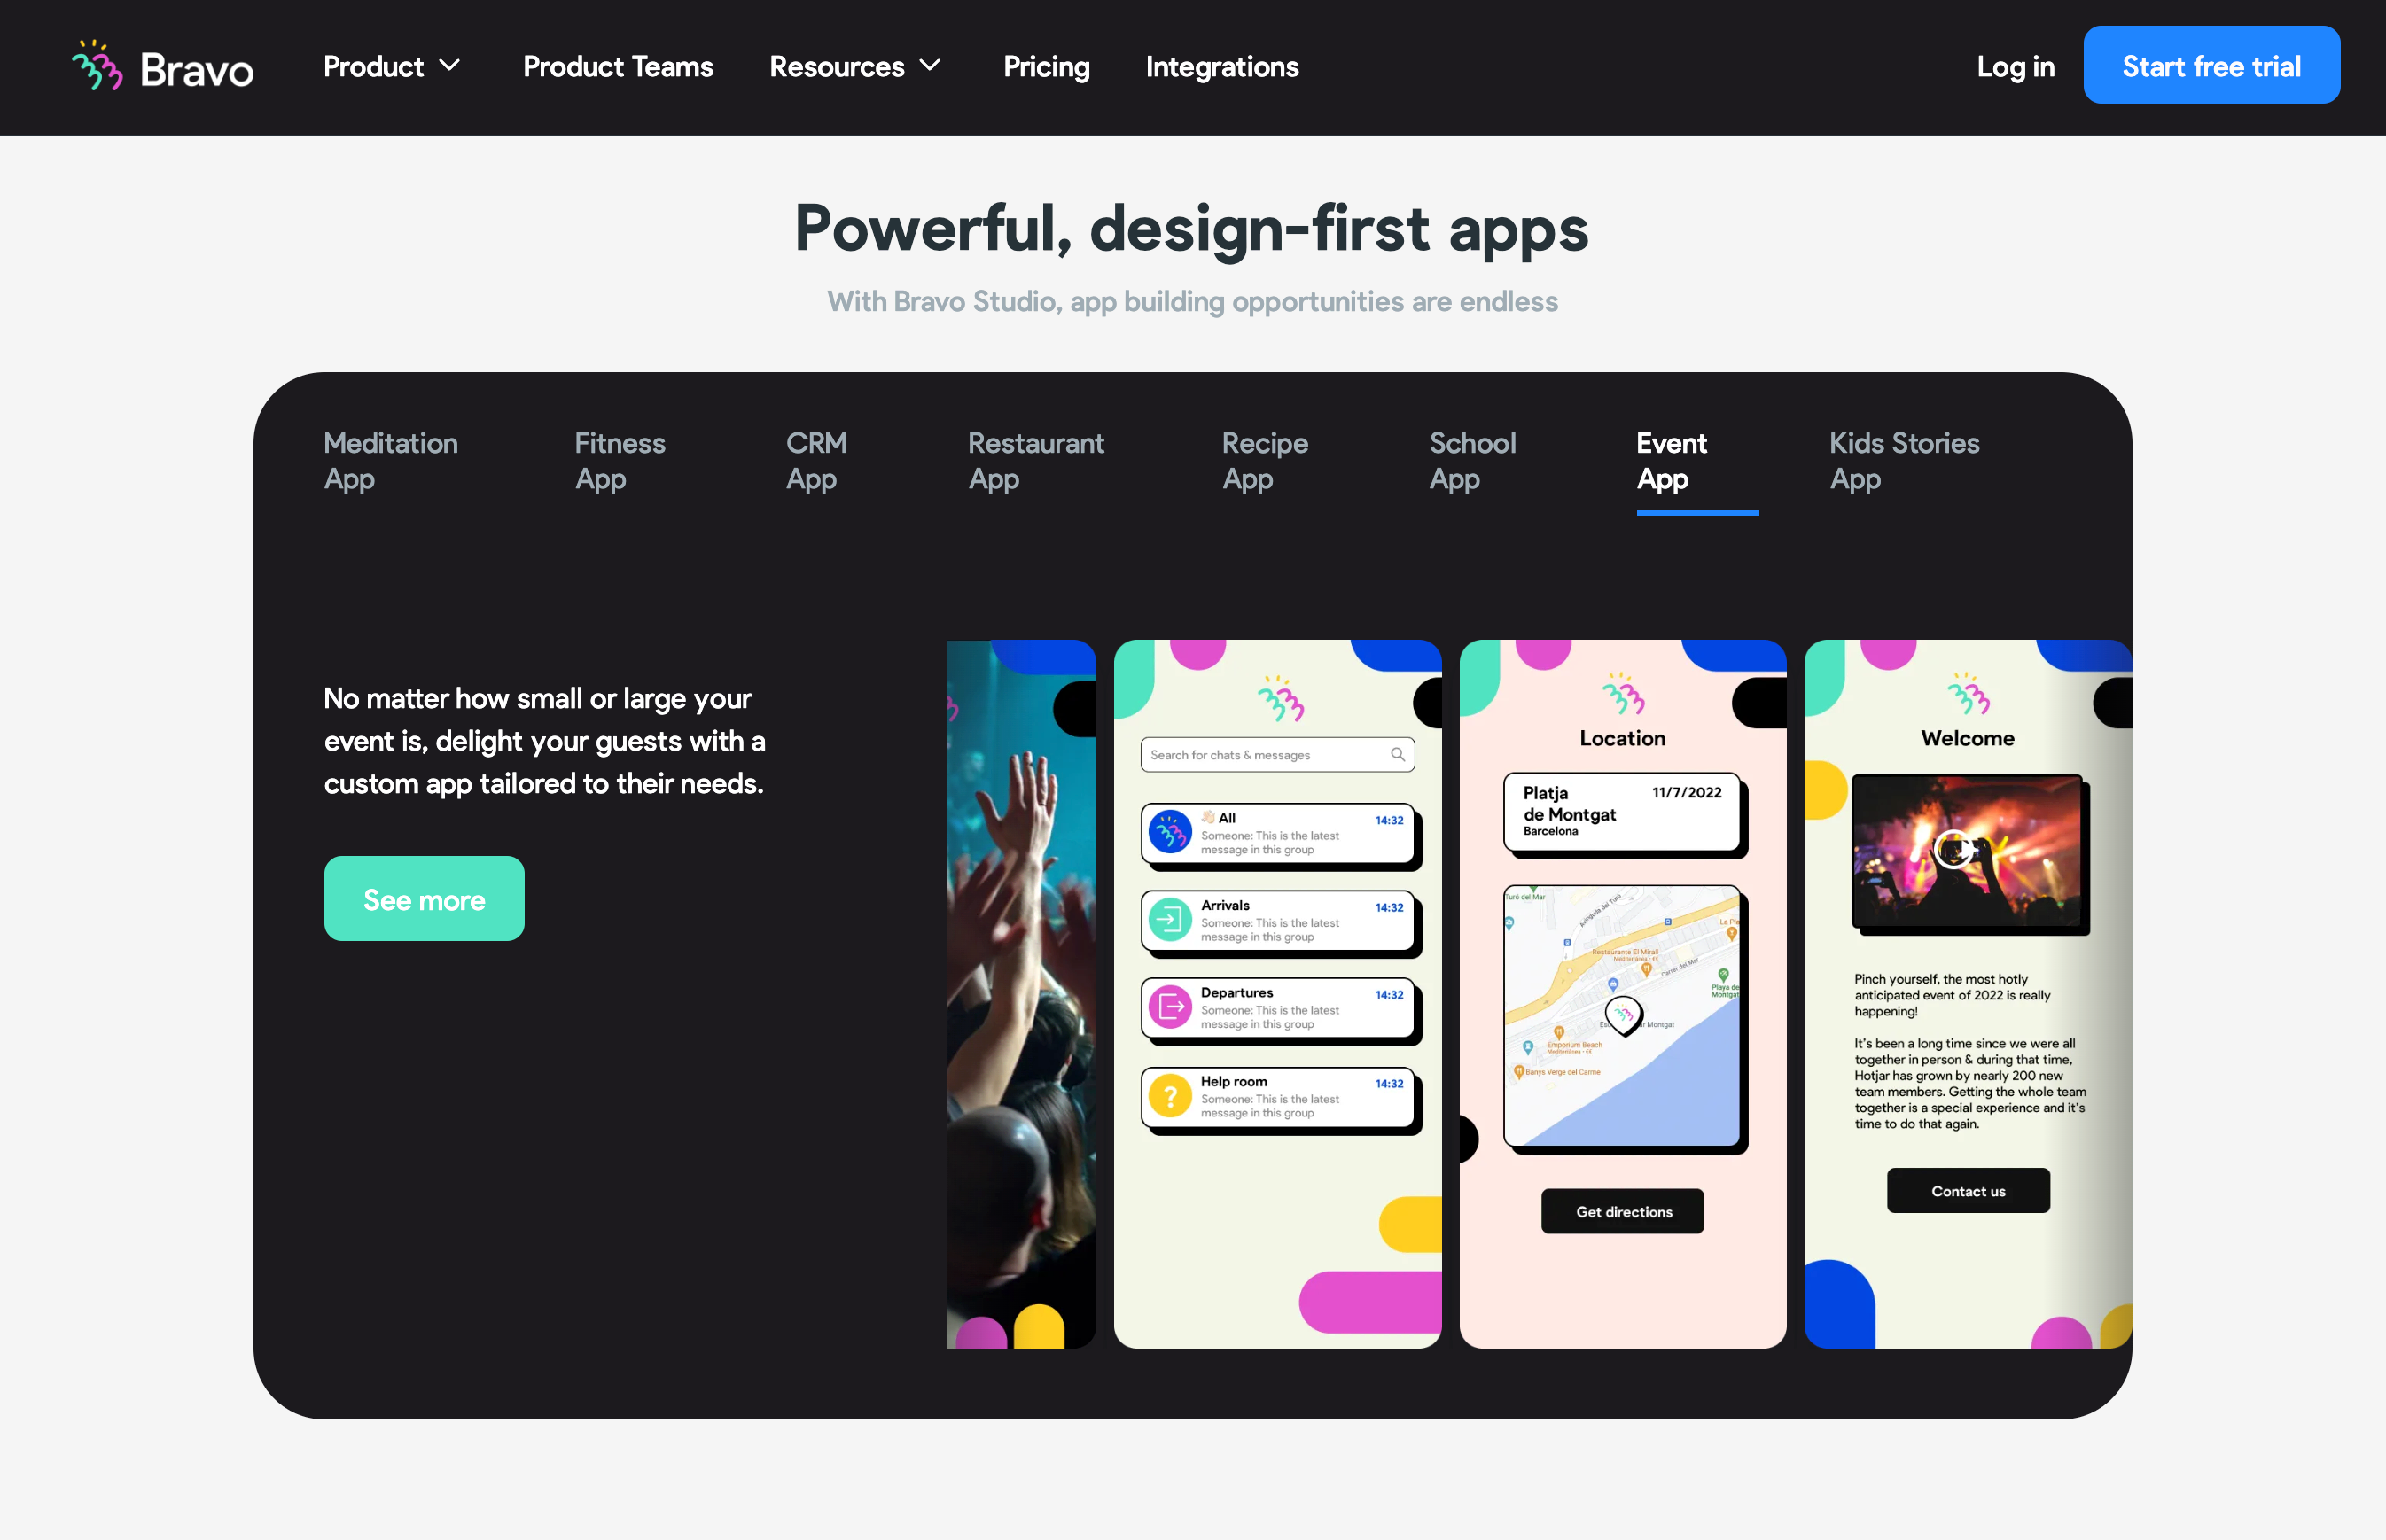 Page d'accueil de l'application Bravo avec le titre "Applications puissantes axées sur le design" avec un aperçu des types d'applications que vous pouvez créer avec leur plate-forme